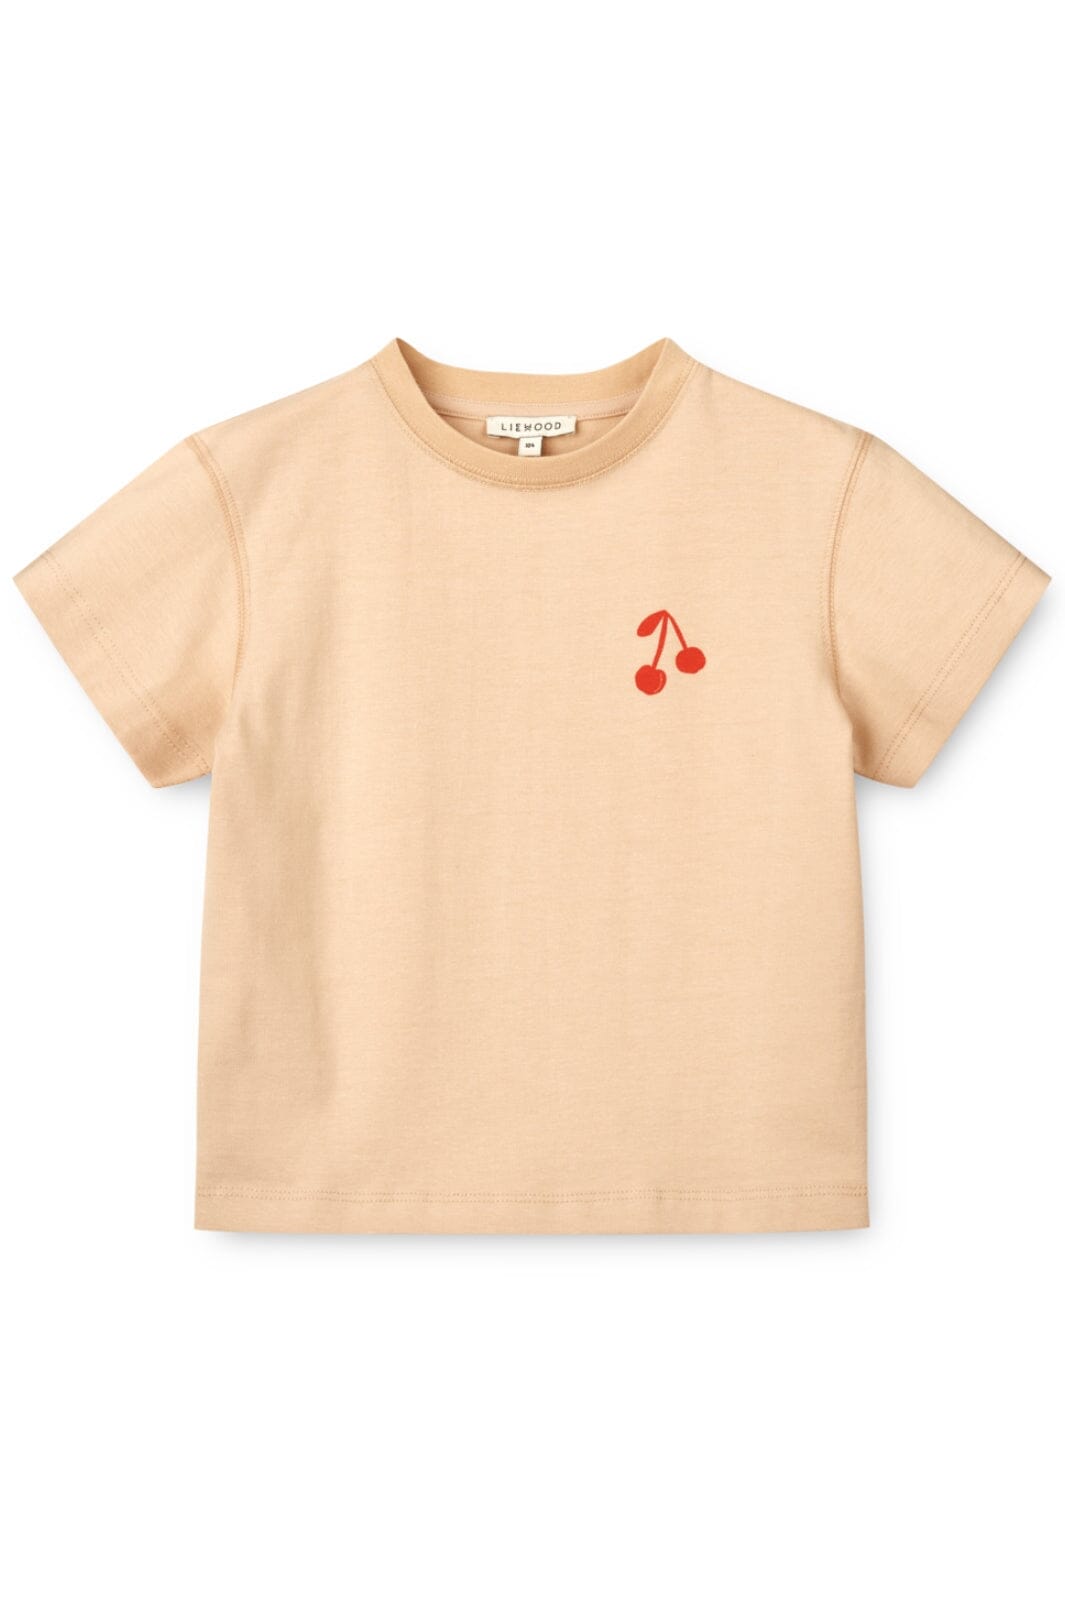 Liewood - Sixten Placement Shortsleeve T-Shirt - Cherries / Apple Blossom T-shirts 